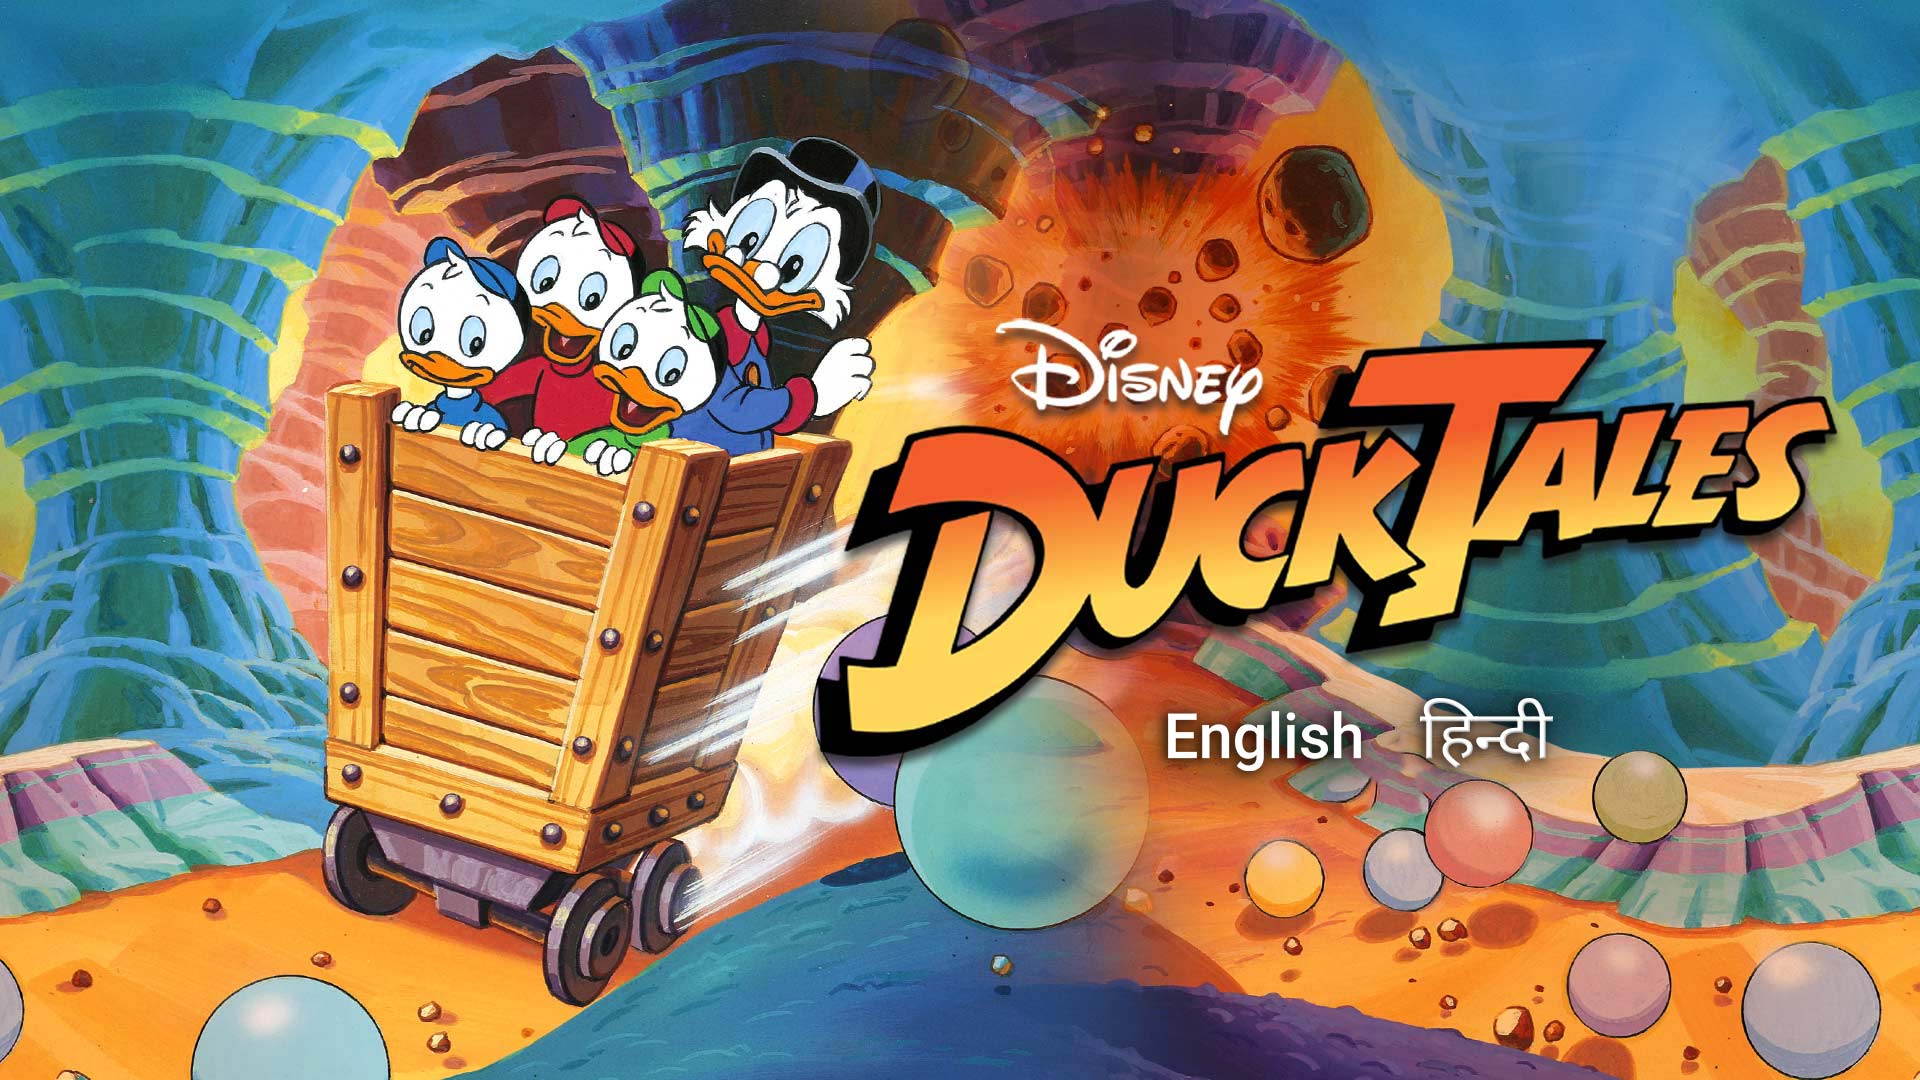 Disney's Ducktales